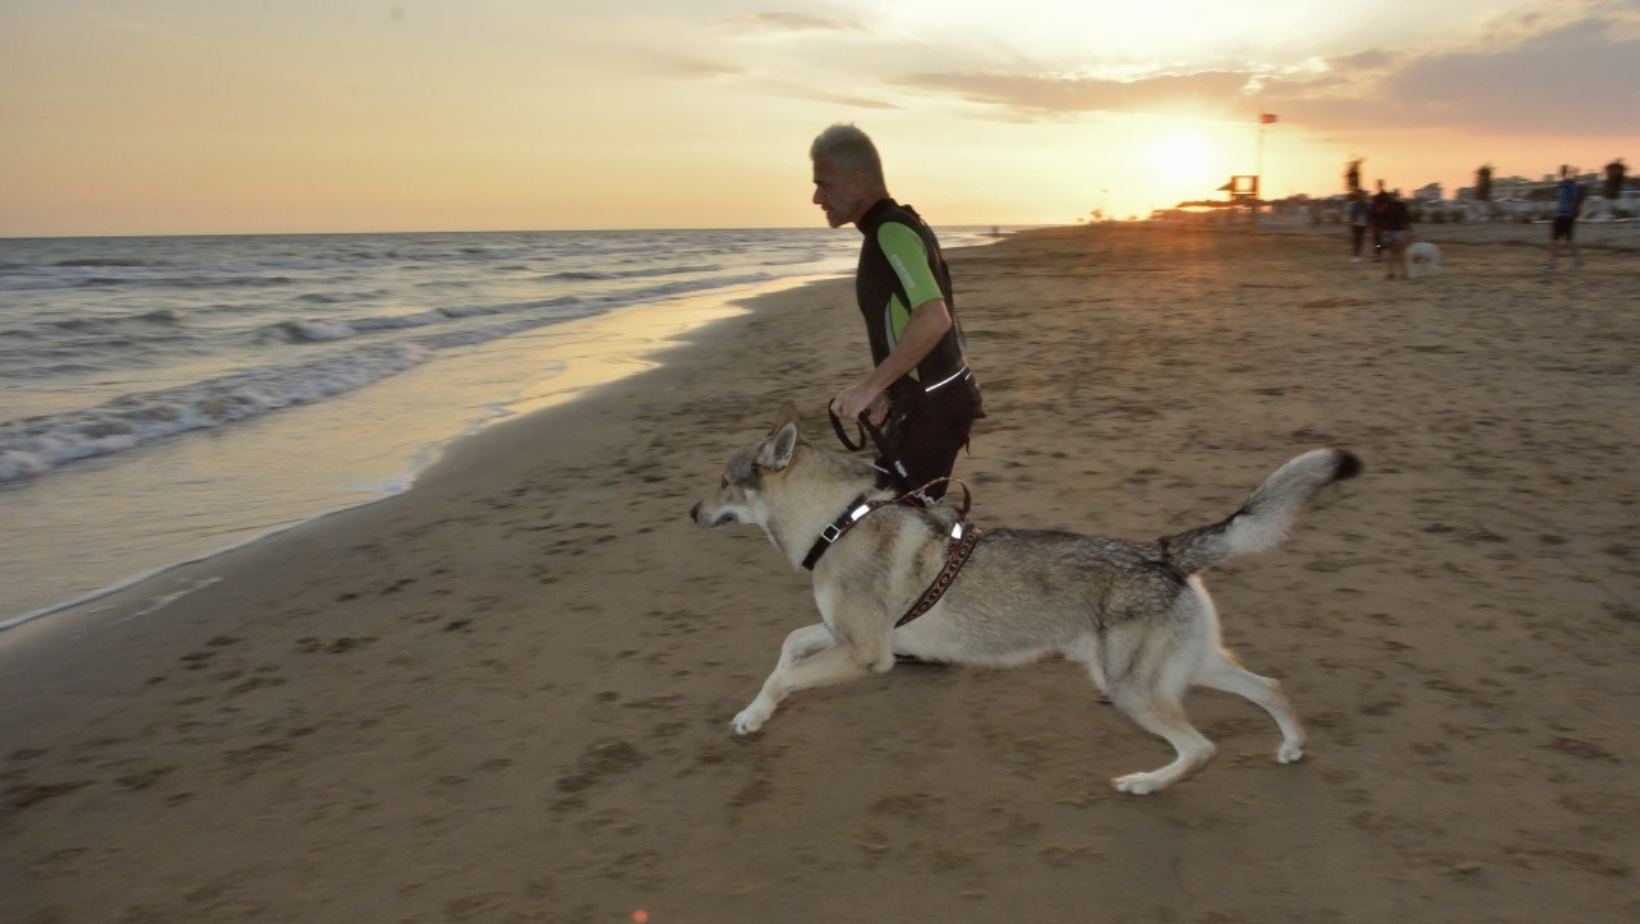 Nuotare, pedalare e correre col cane: il Dog Triathlon